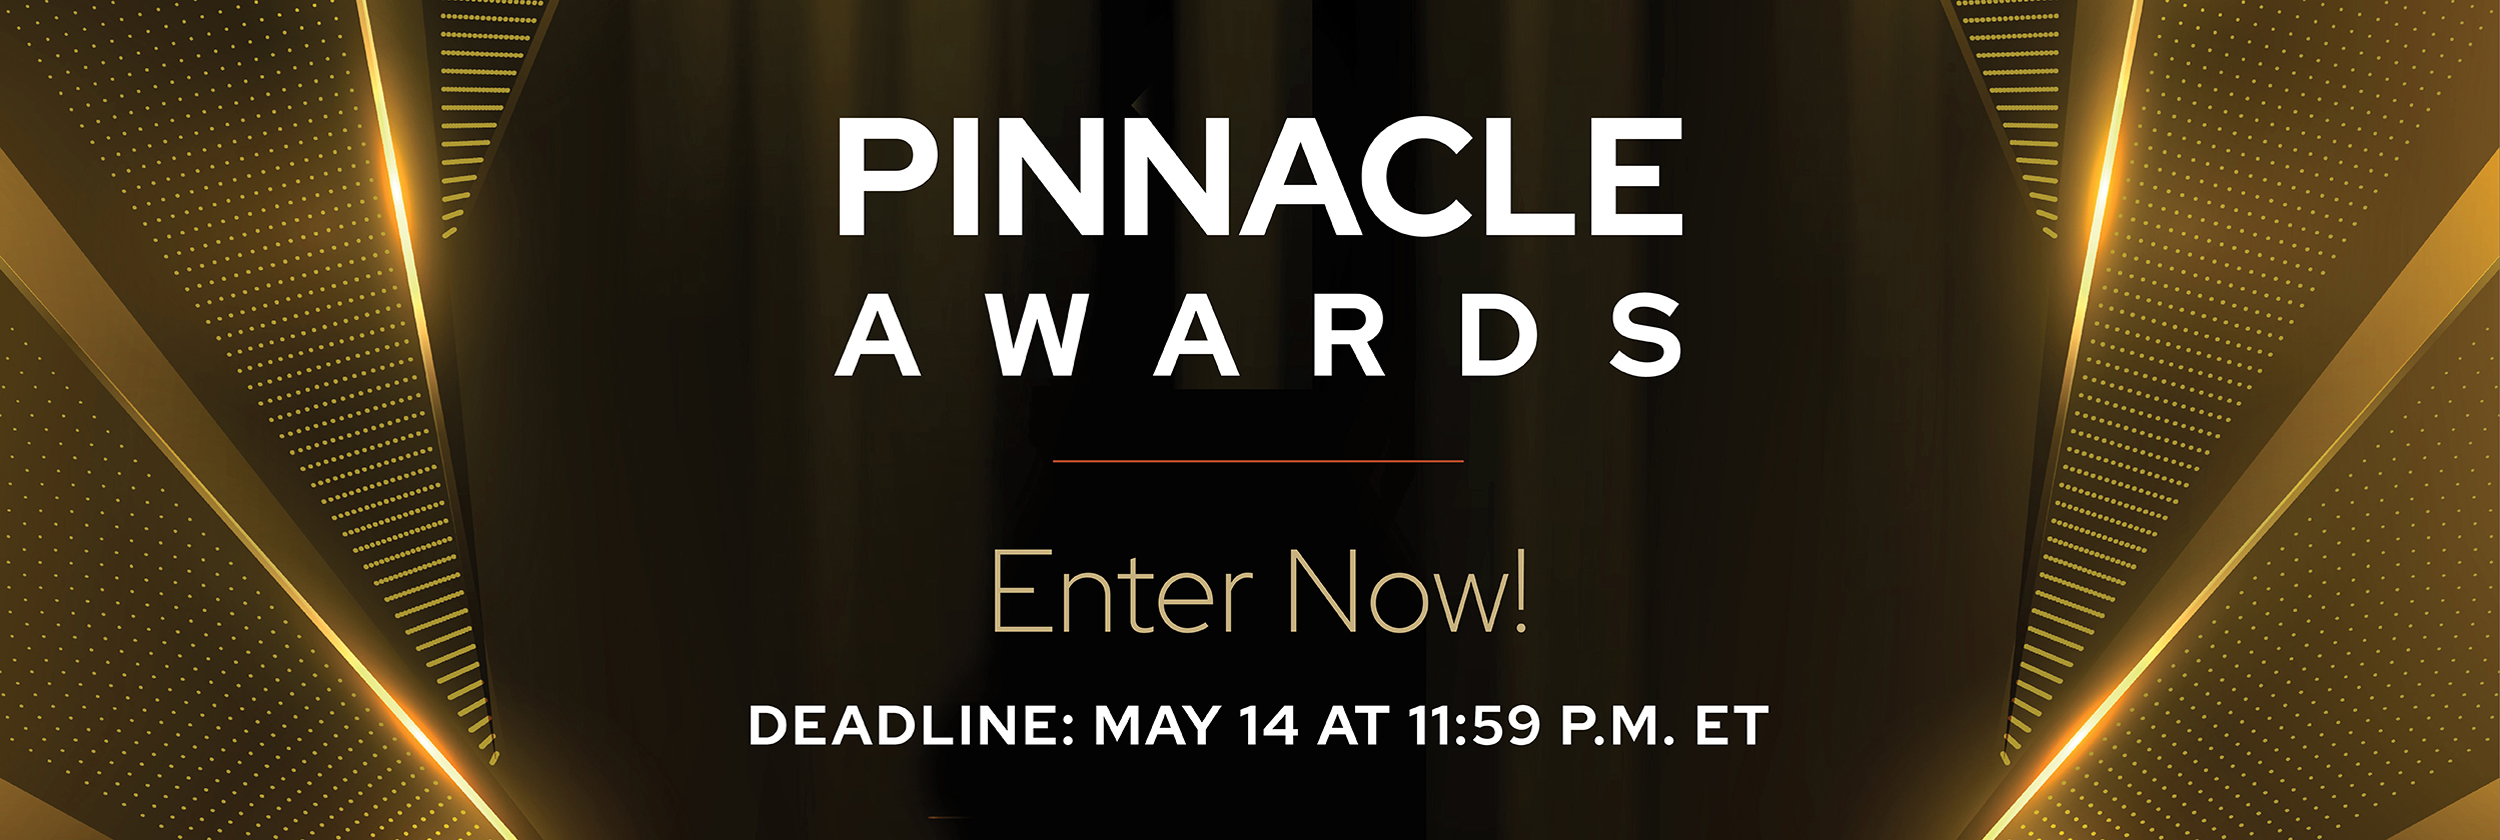 Pinnacle Awards - Enter Now